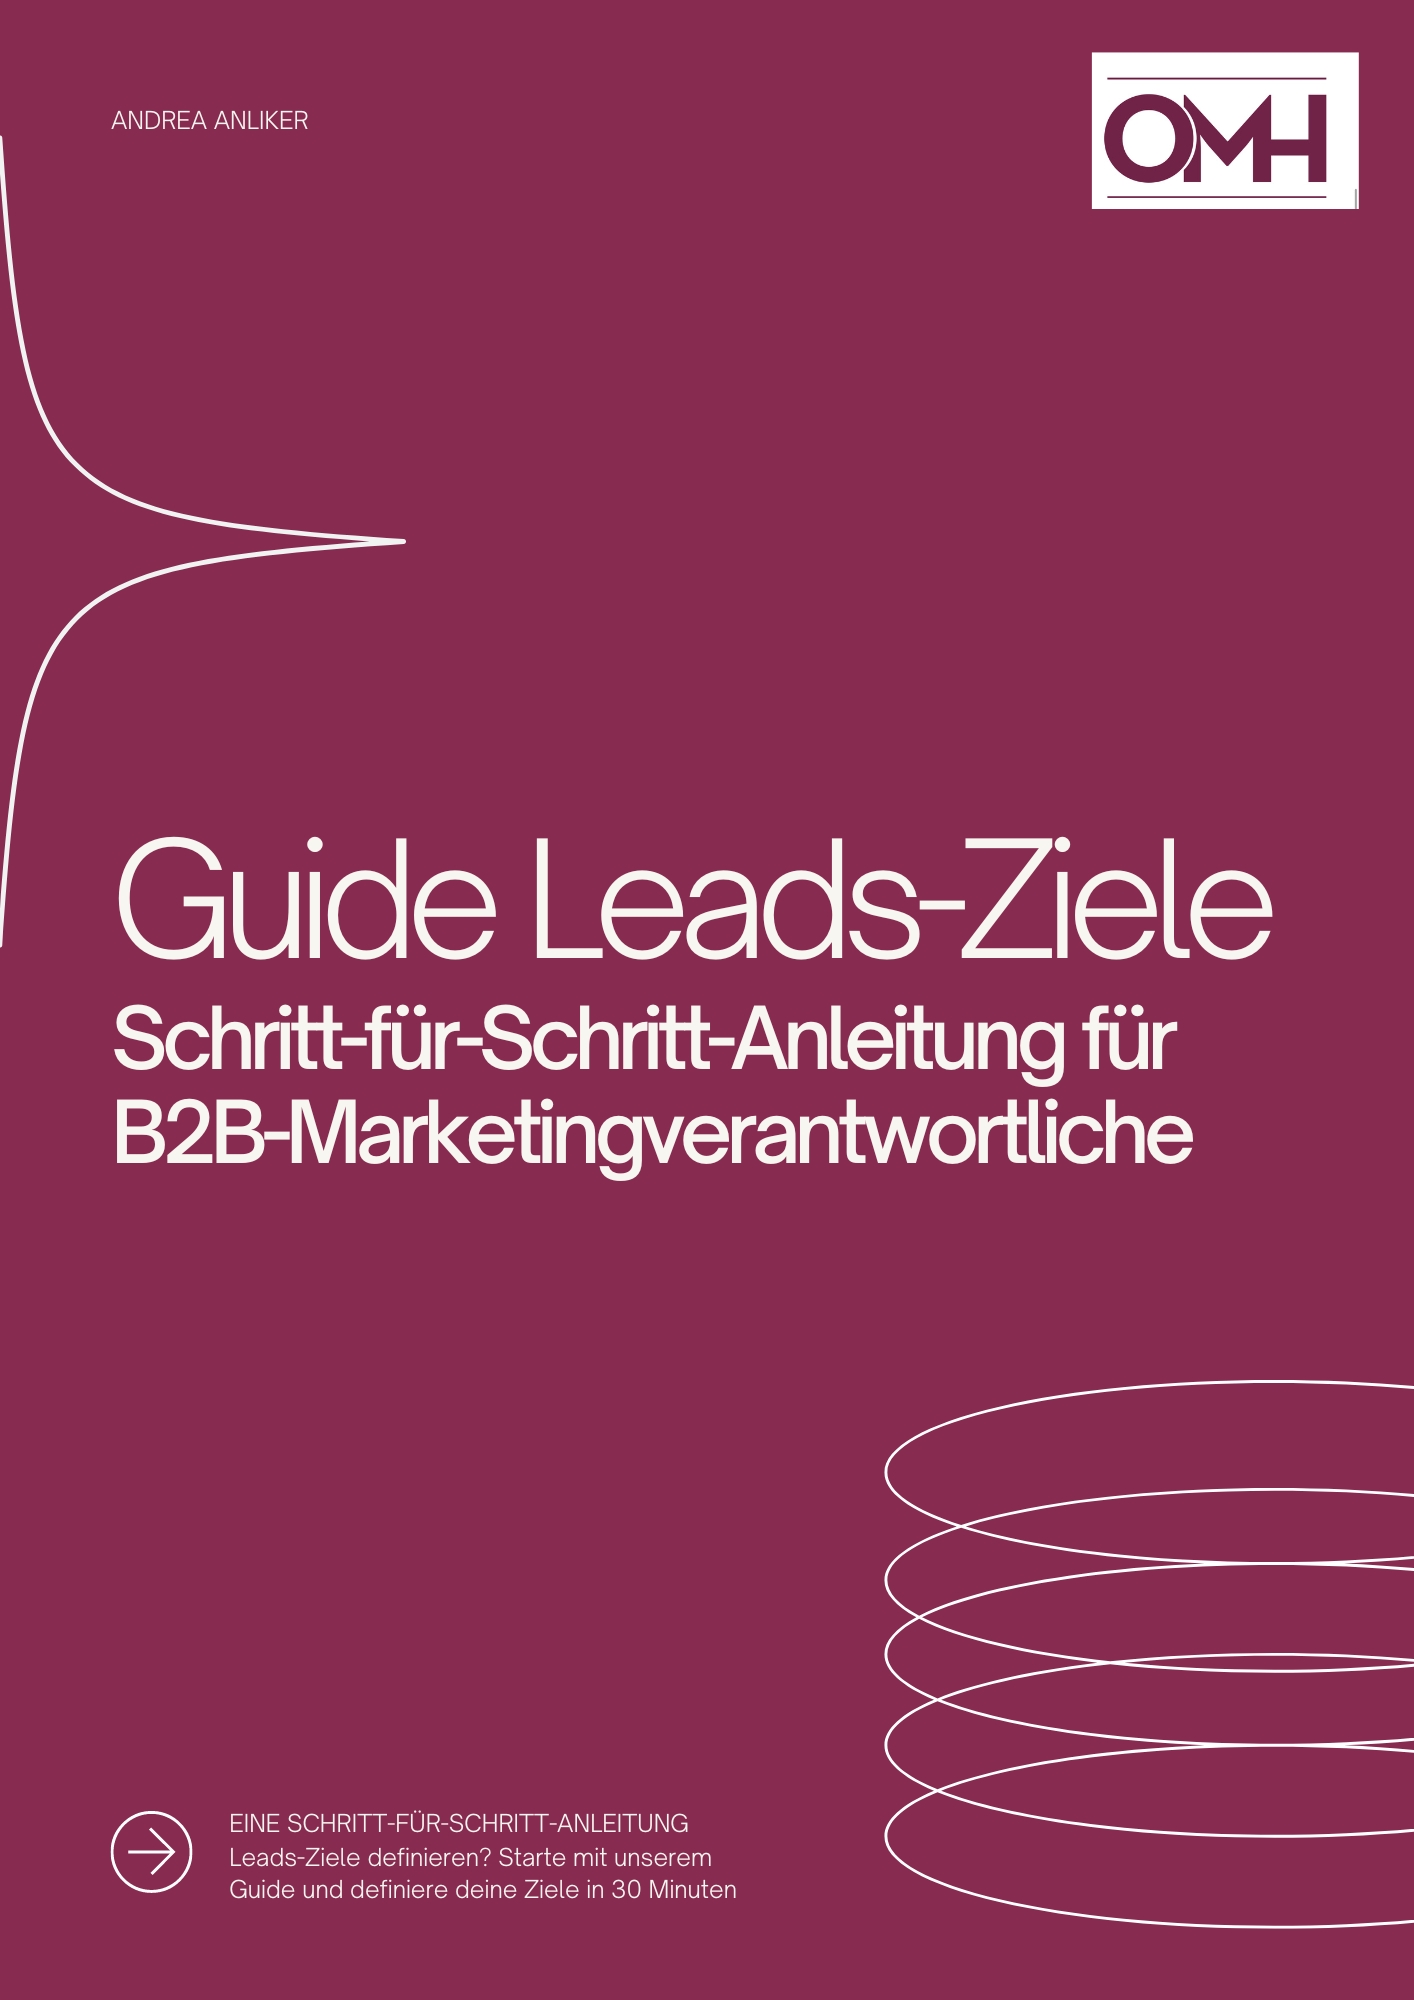 Leads-Ziele-Guide